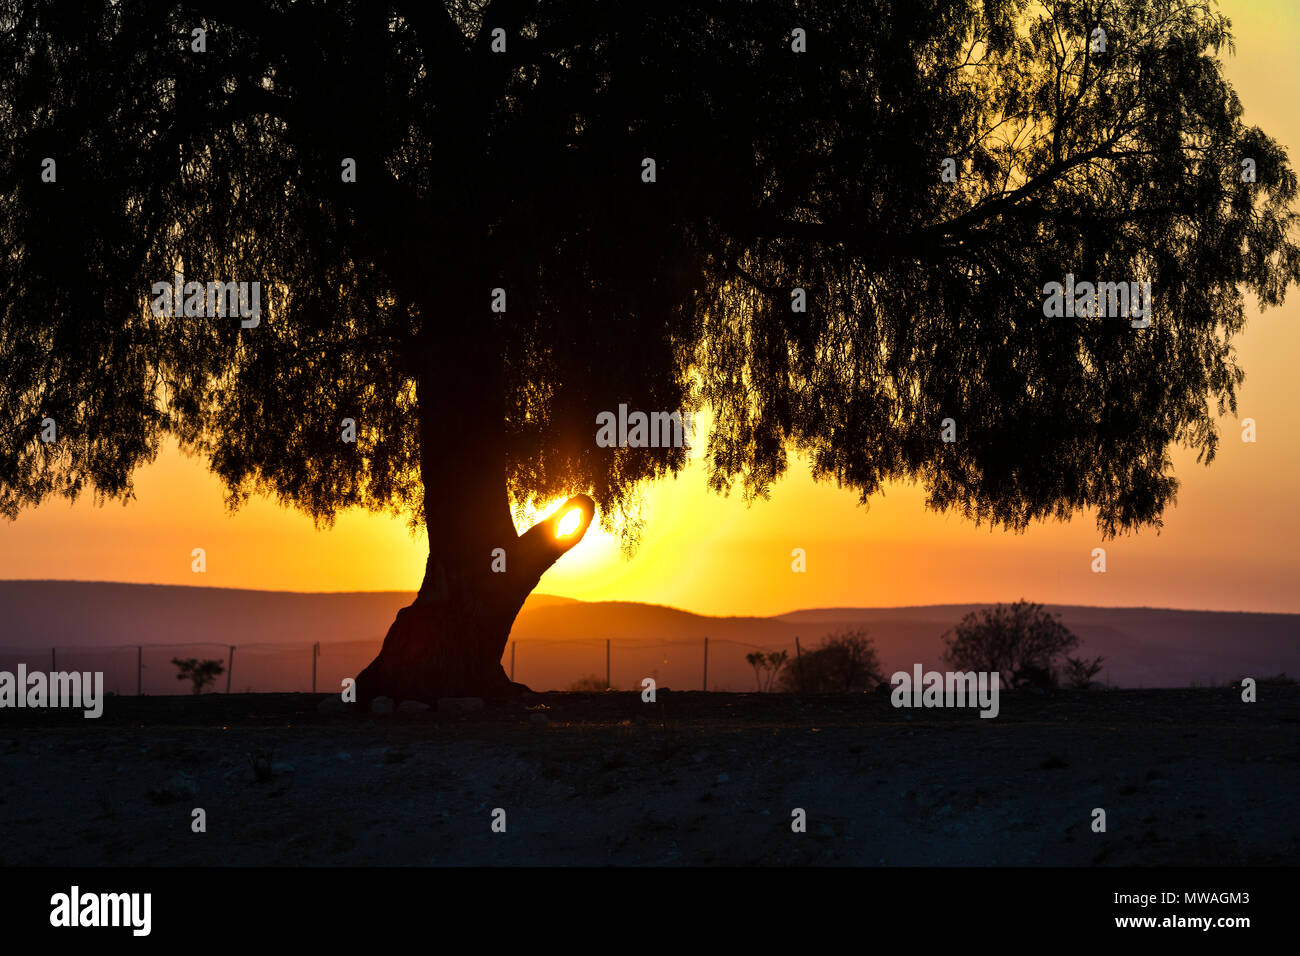 Ein Sonnenuntergang Silhouetten einen prächtigen Baum - MINERAL DE POZOS, MEXIKO Stockfoto